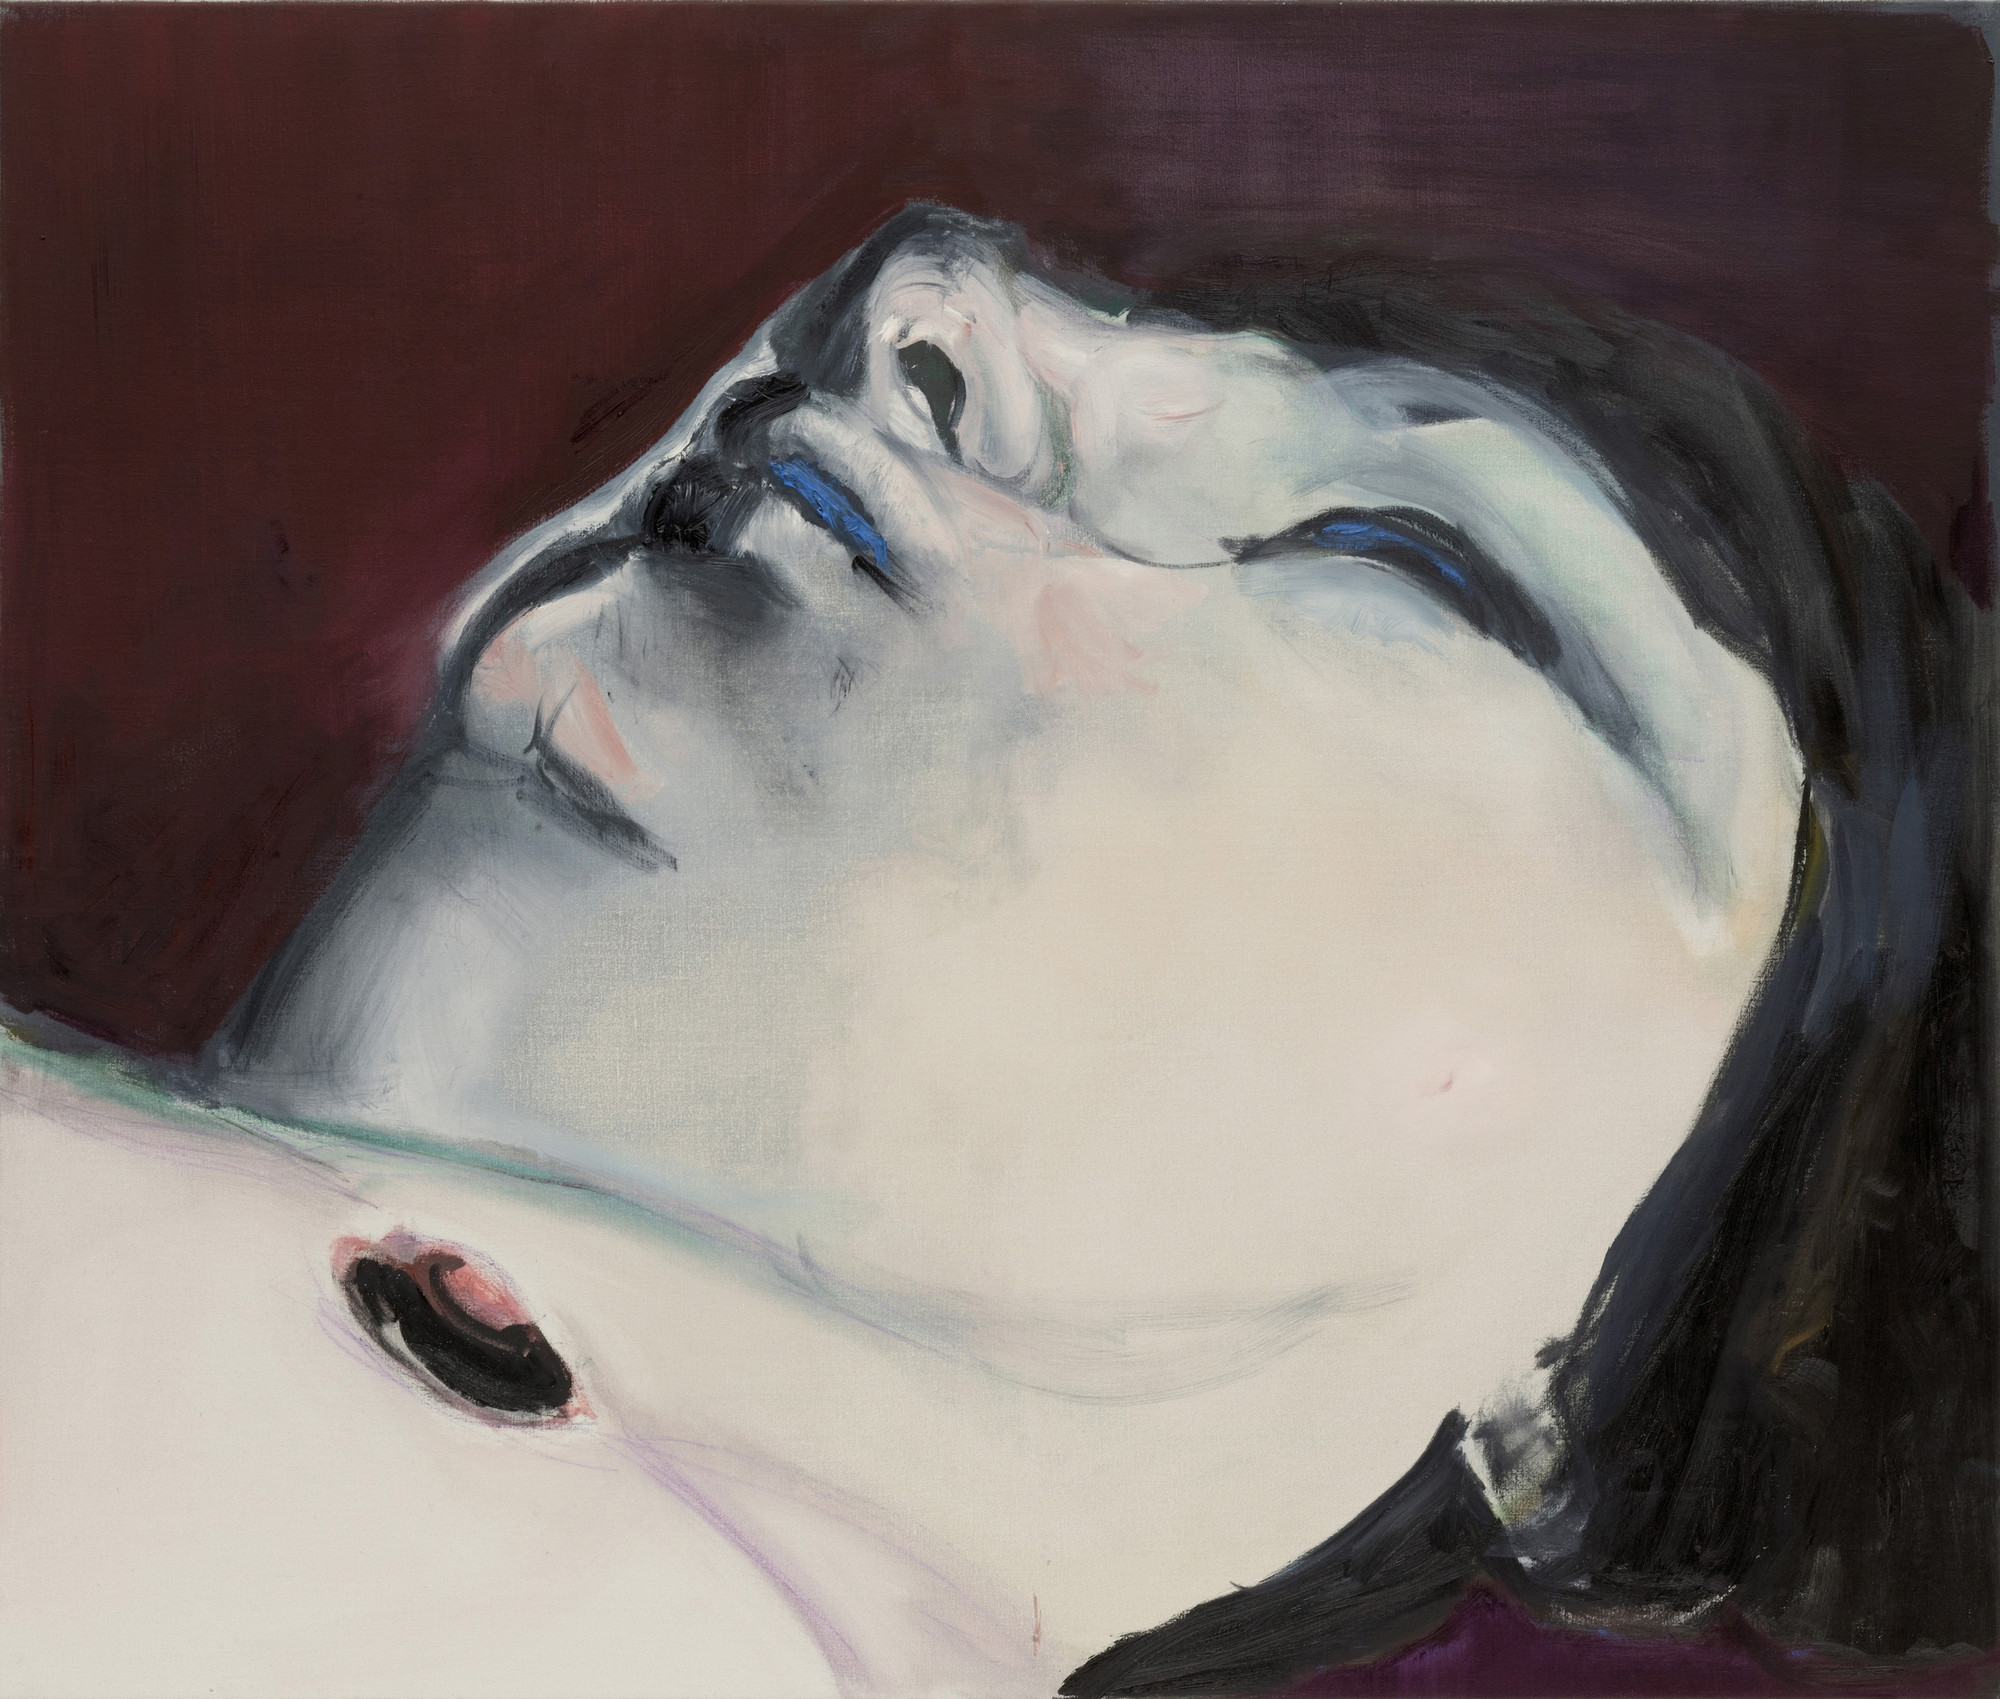 Marlene Dumas: Measuring Your Own Grave | MoMA